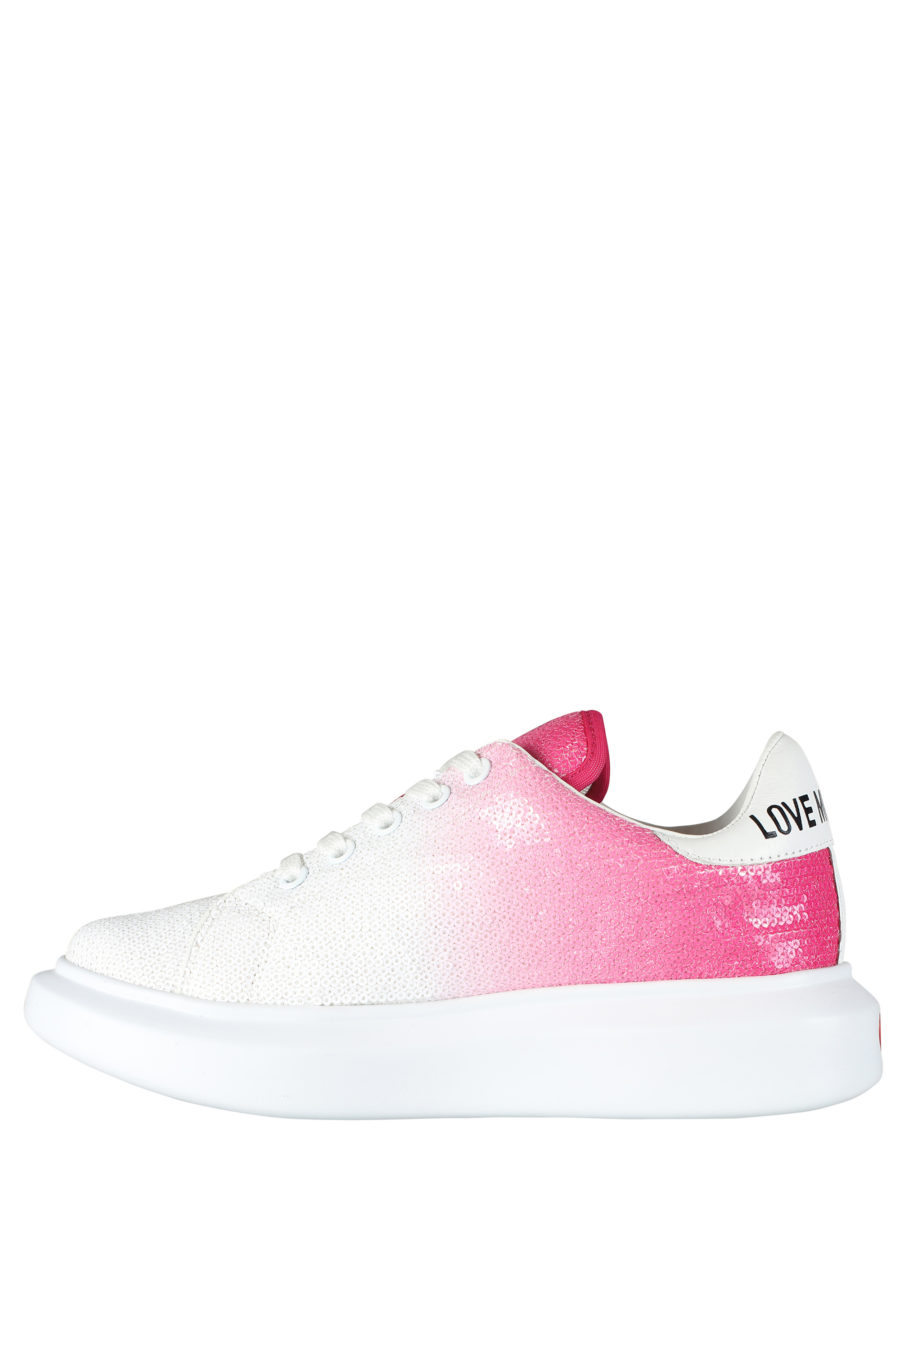 Zapatillas blancas con degrade rosa y lentejuelas - IMG 5264